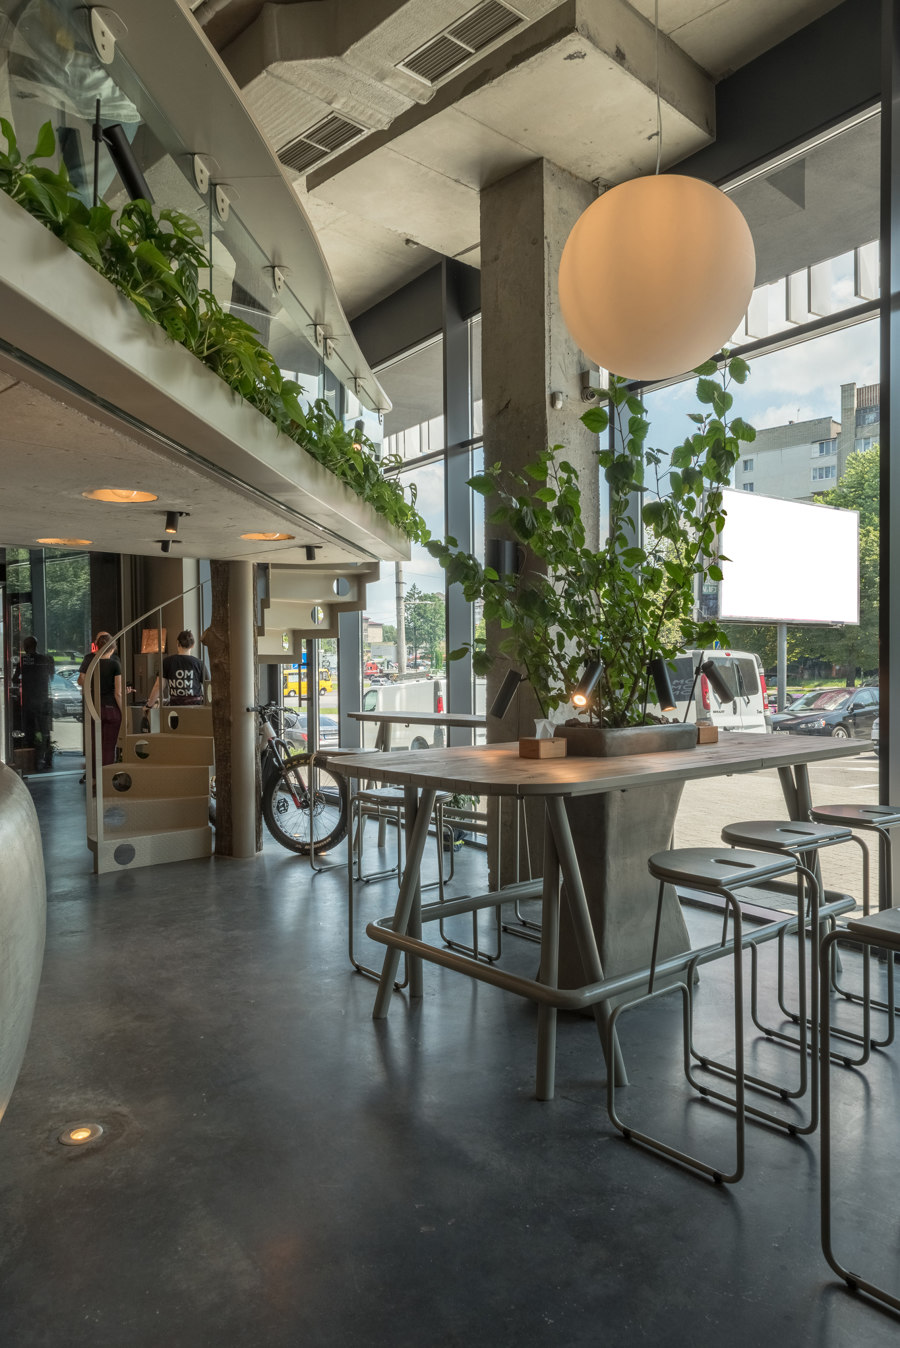 OM NOM NOM vegan cafe von replus design bureau | Café-Interieurs